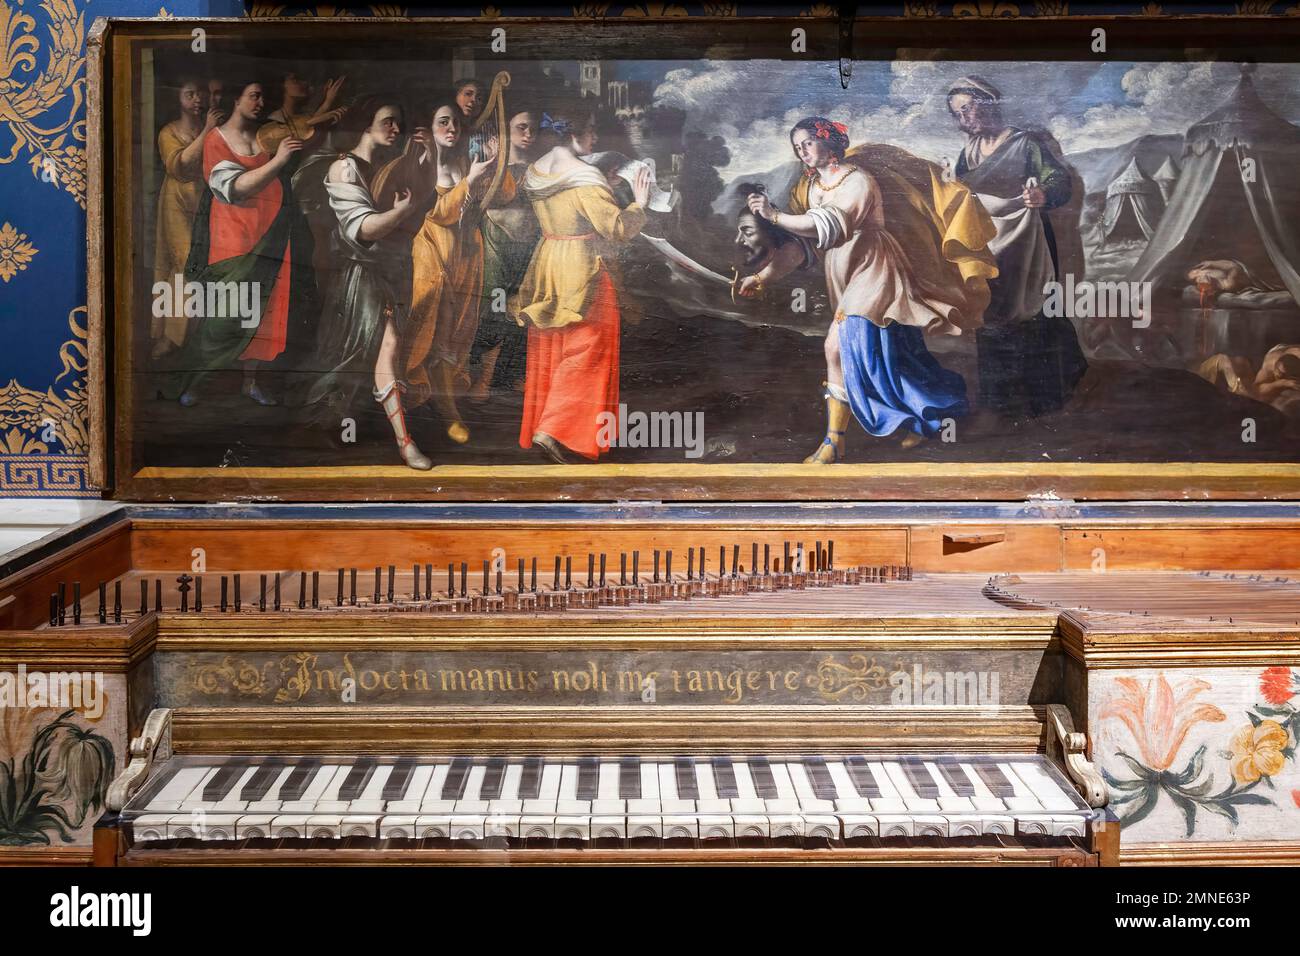 Cembalo mit rechteckigem Spinet der Renaissance im Museum des Teatro alla Scala in Mailand, Italien, Europa. Stockfoto